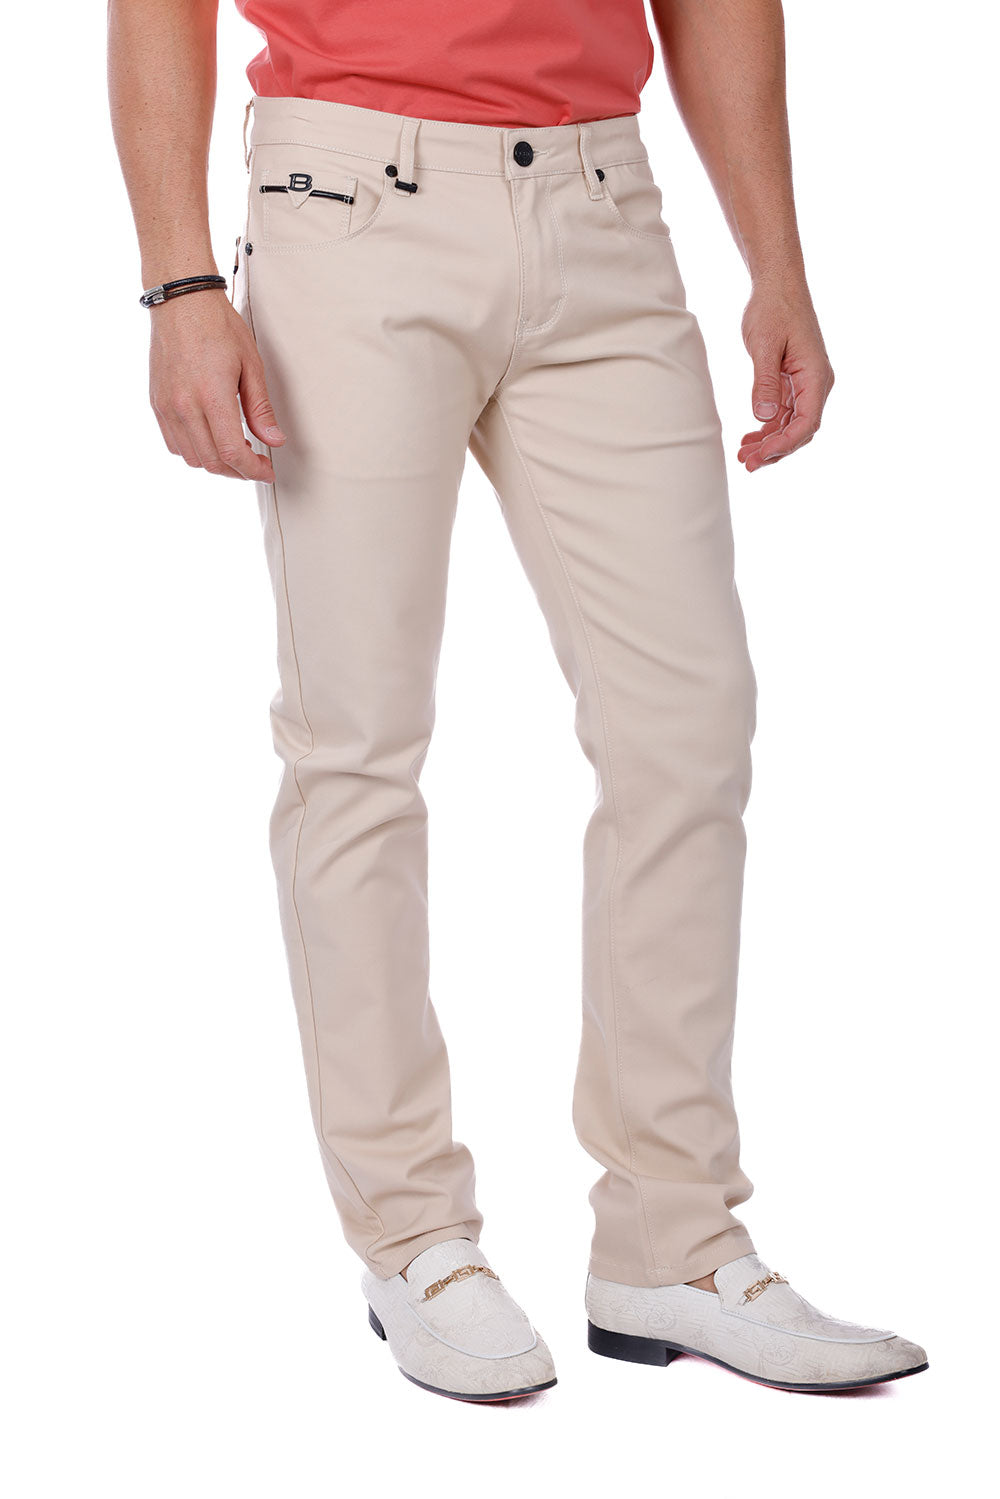 Barabas Men's Slim Fit Solid Color Plain Premium Jeans 3CPW32 Cream